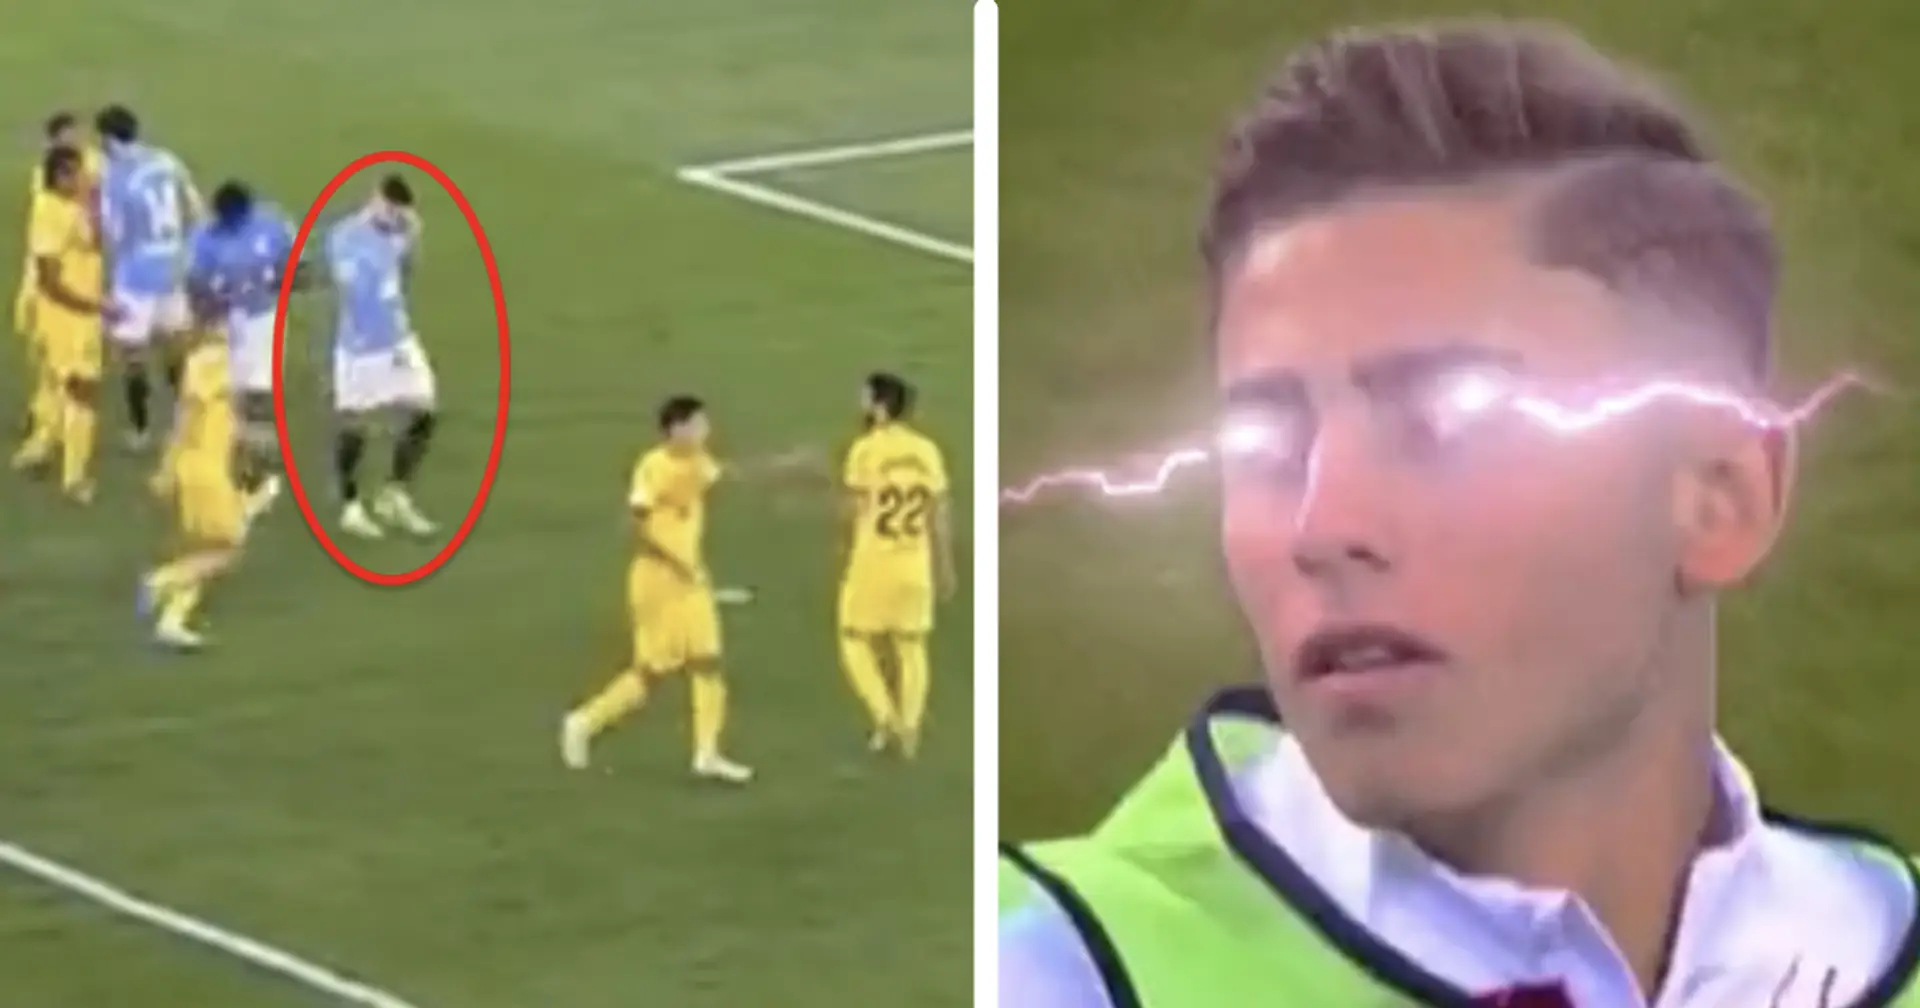 Un joueur du Celta tente de saboter le point de penalty avant le tir de Lewandowski – La réaction de Fermin est brillante